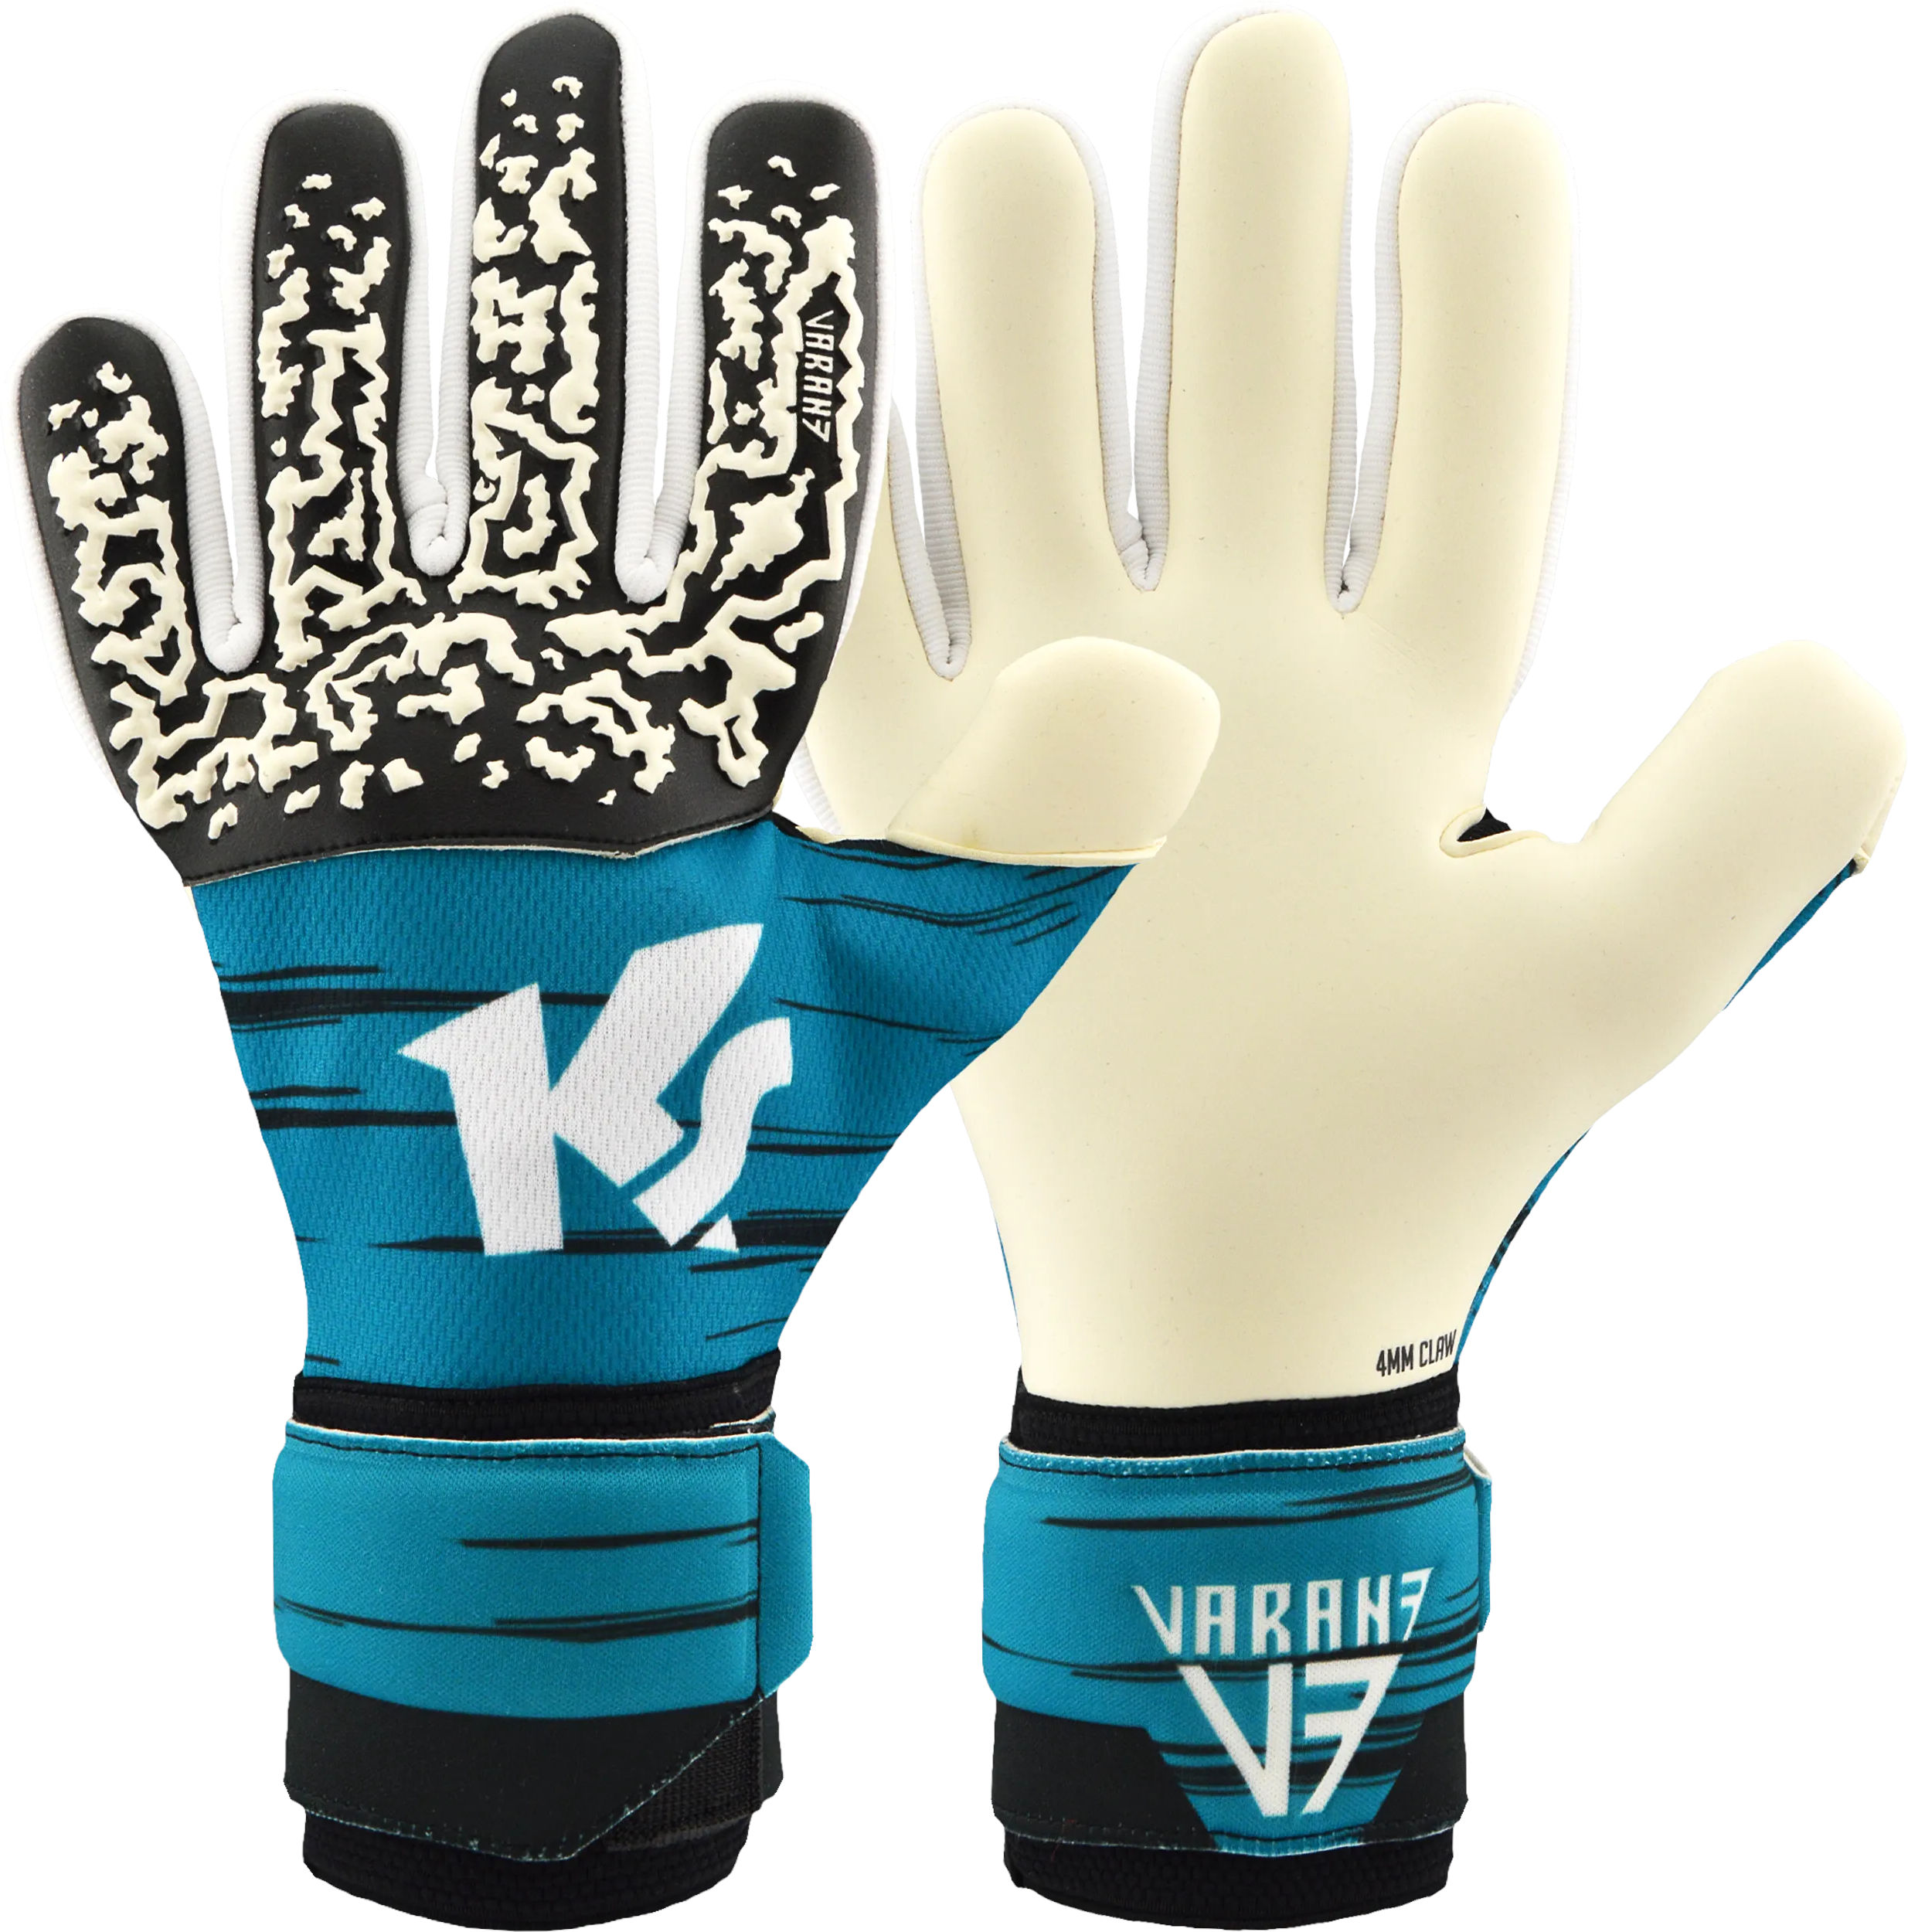 Goalkeeper's gloves KEEPERsport Varan7 Premier NC